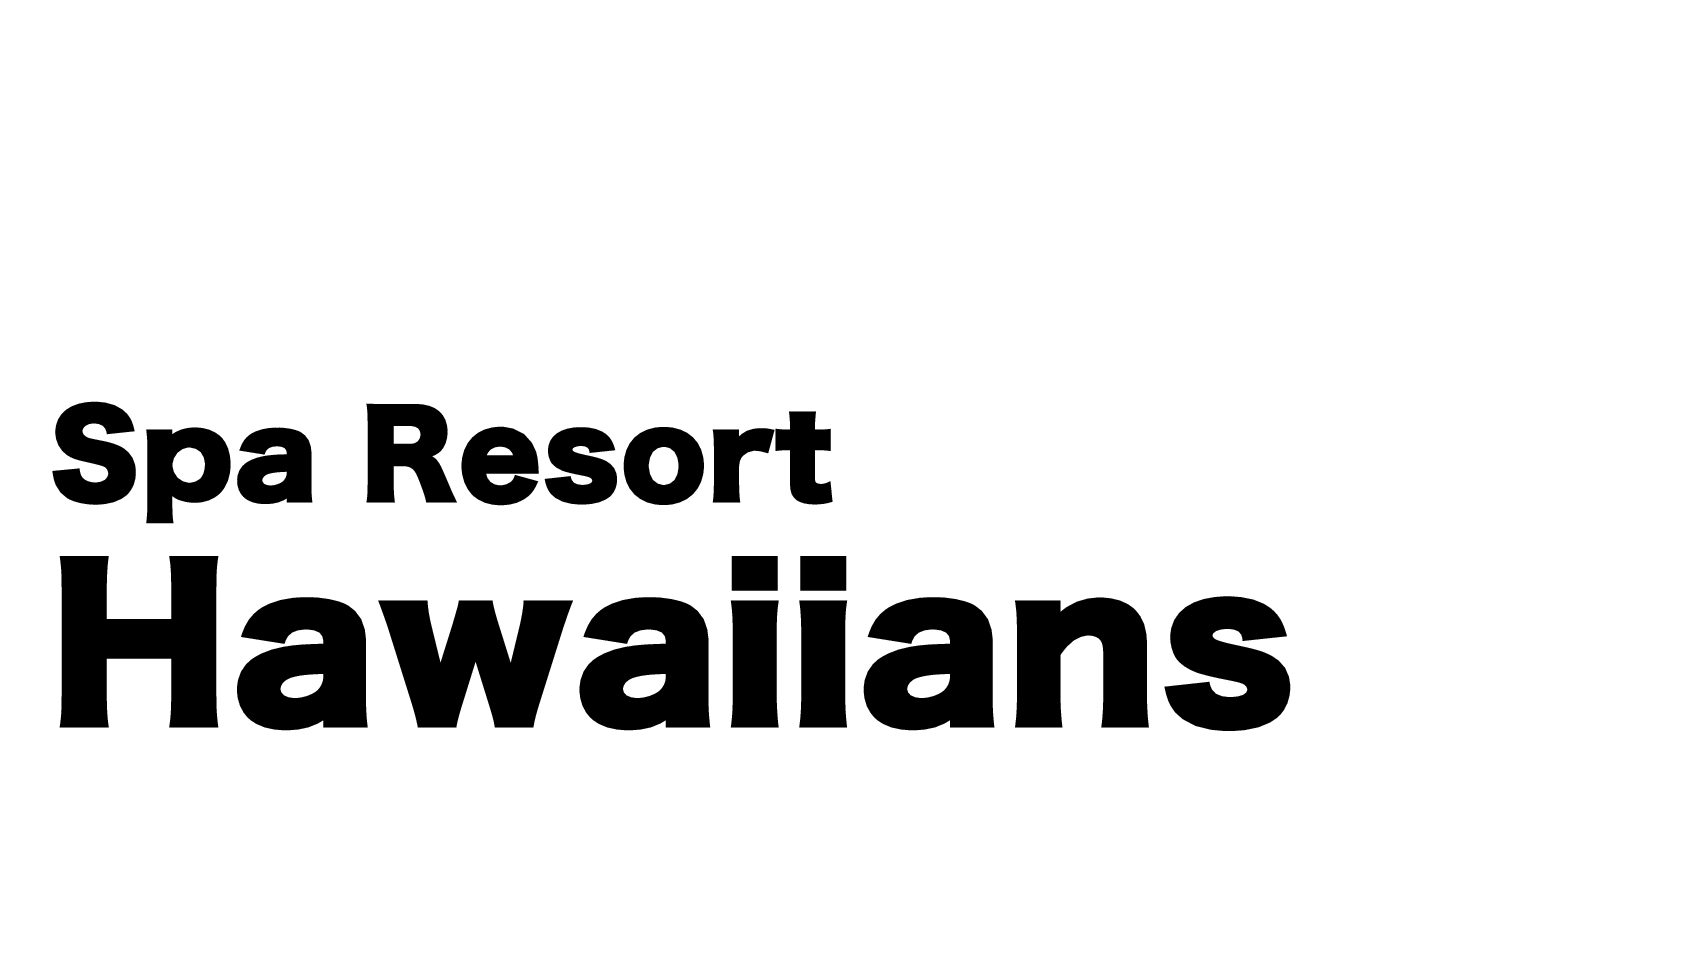 再開 スパリゾート ハワイアンズの日帰りのプール営業について ガラクタドットコム